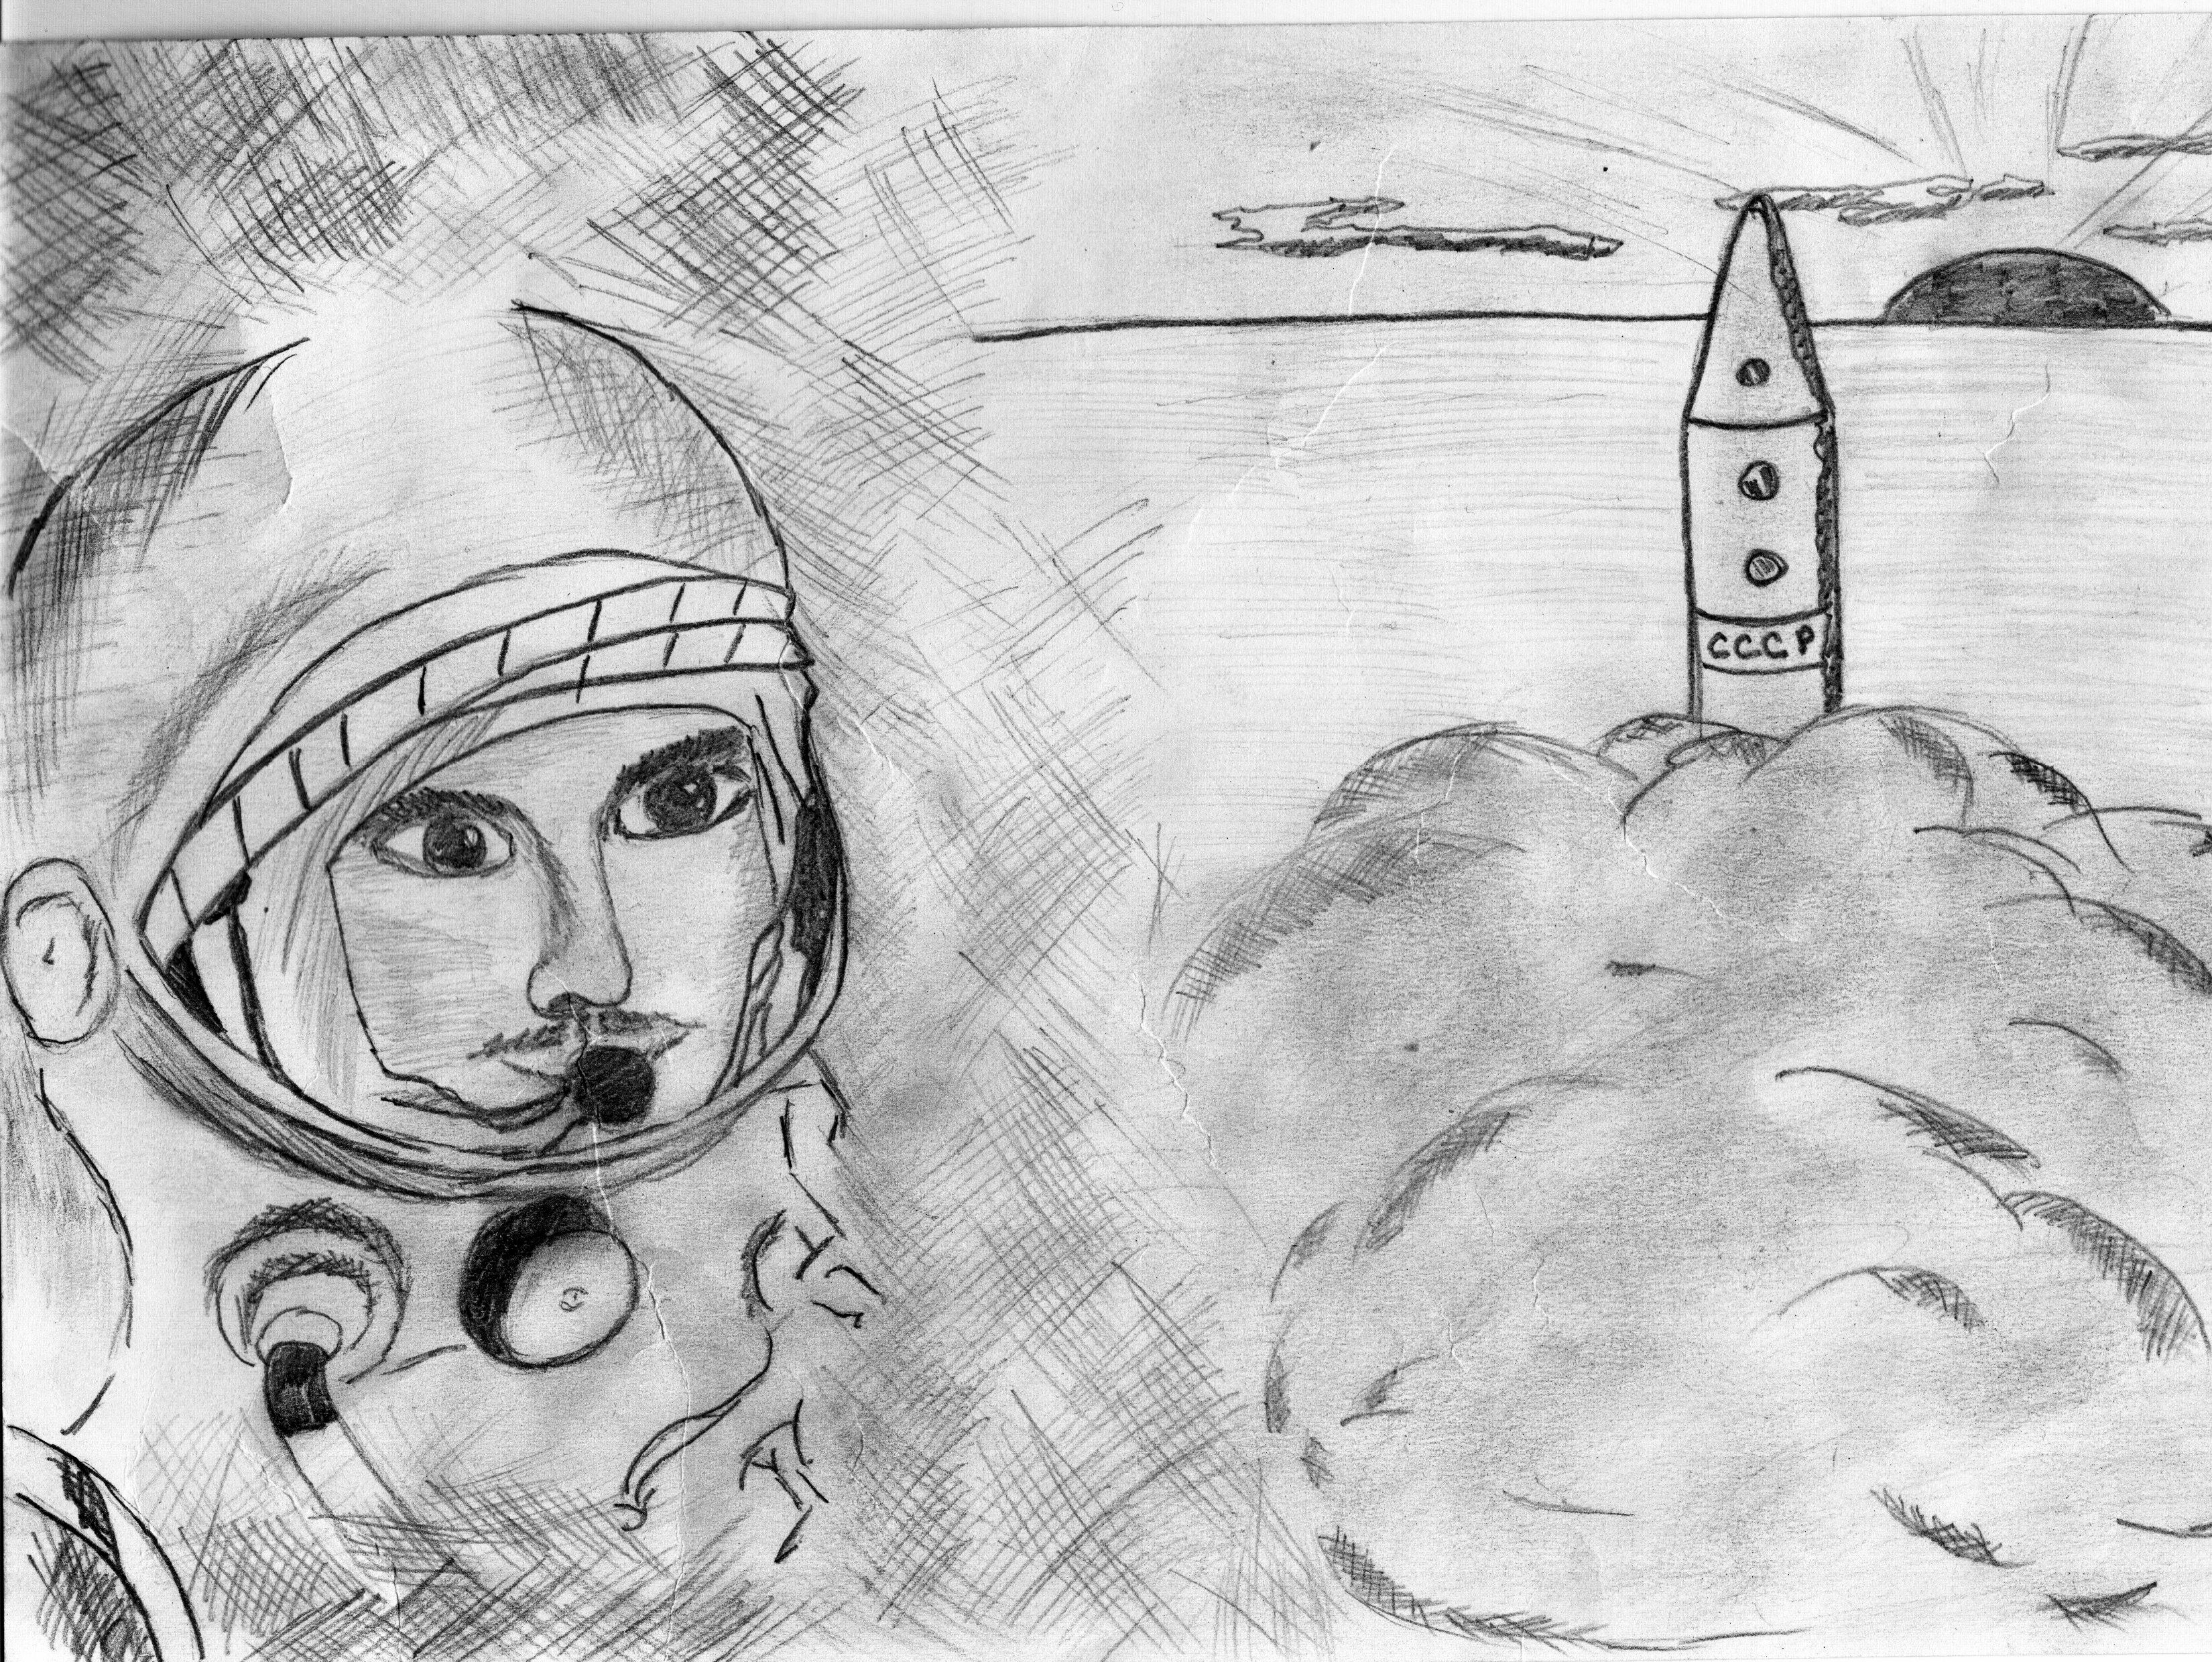 Рисунок на тему космос легкий карандашом. Рисунок ко Дню космонавтики. Космос рисунок карандашом простым. Рисование ко Дню космонавтики. Рисунок ко Дню космонавтики карандашом.